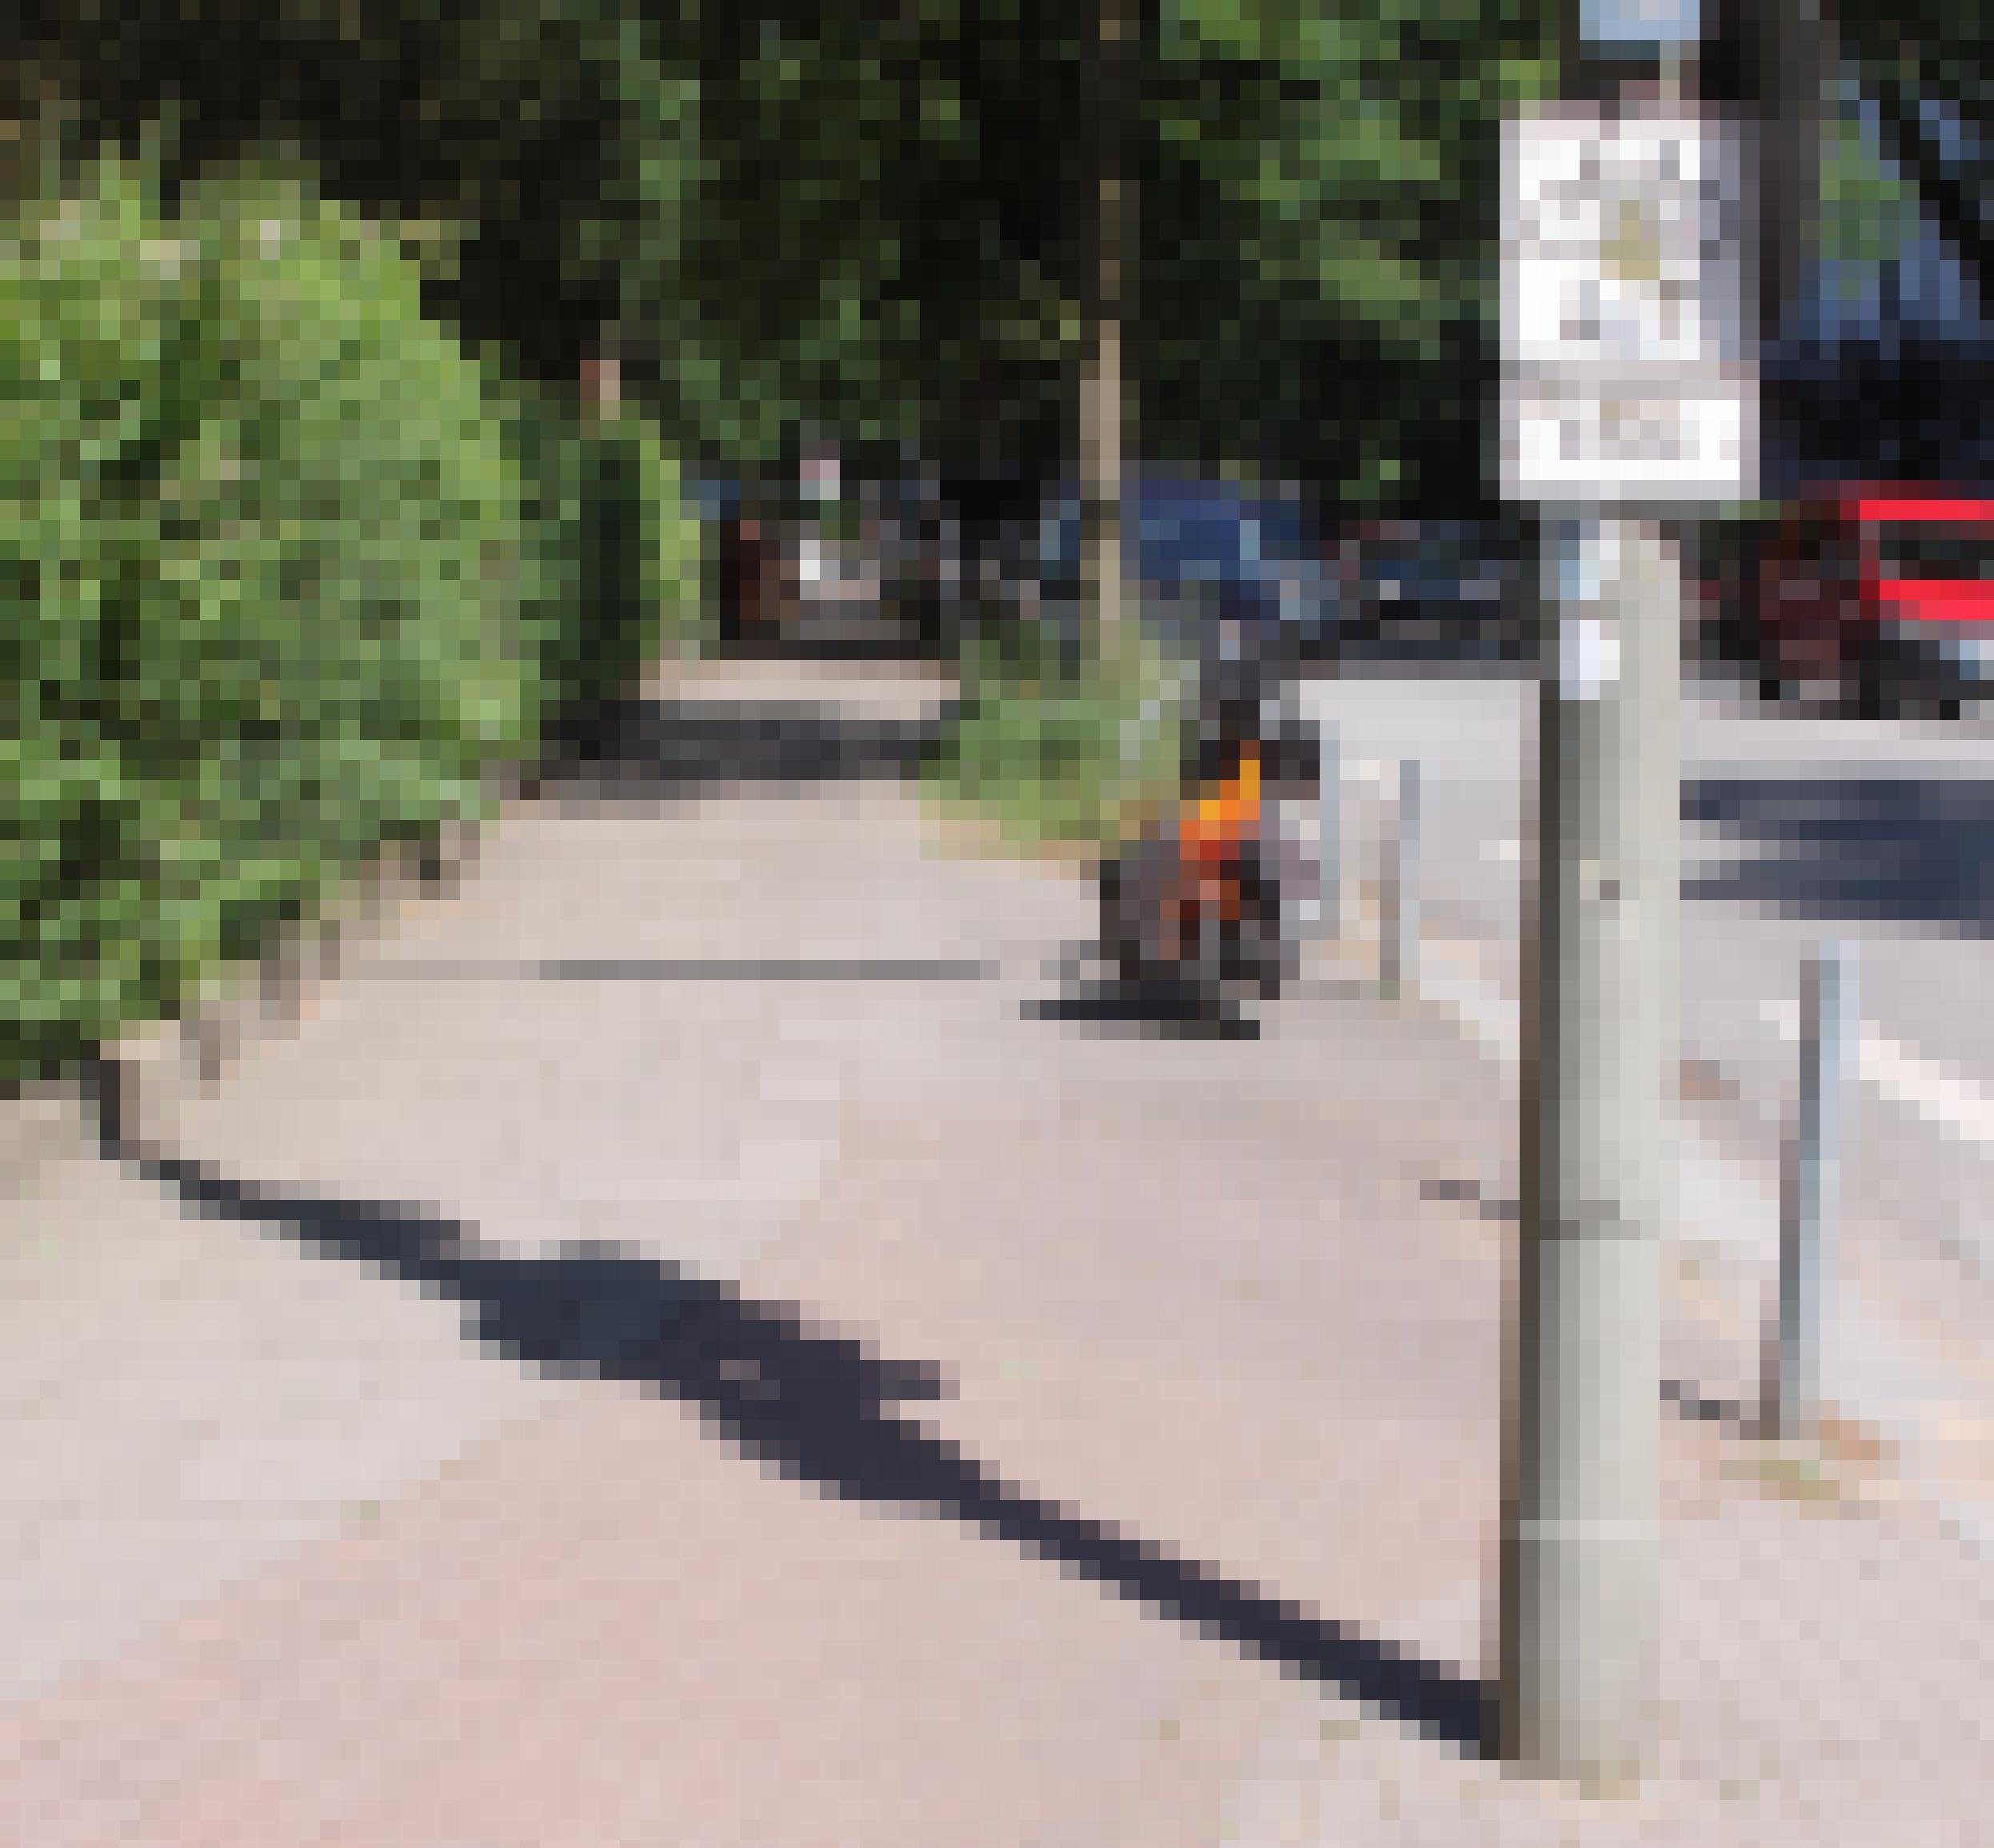 Ein Schild an einem Radweg weist auf dessen Ende hin. Im Hintergrund ist ein orangefarbenes, parkendes Mofa zu sehen.